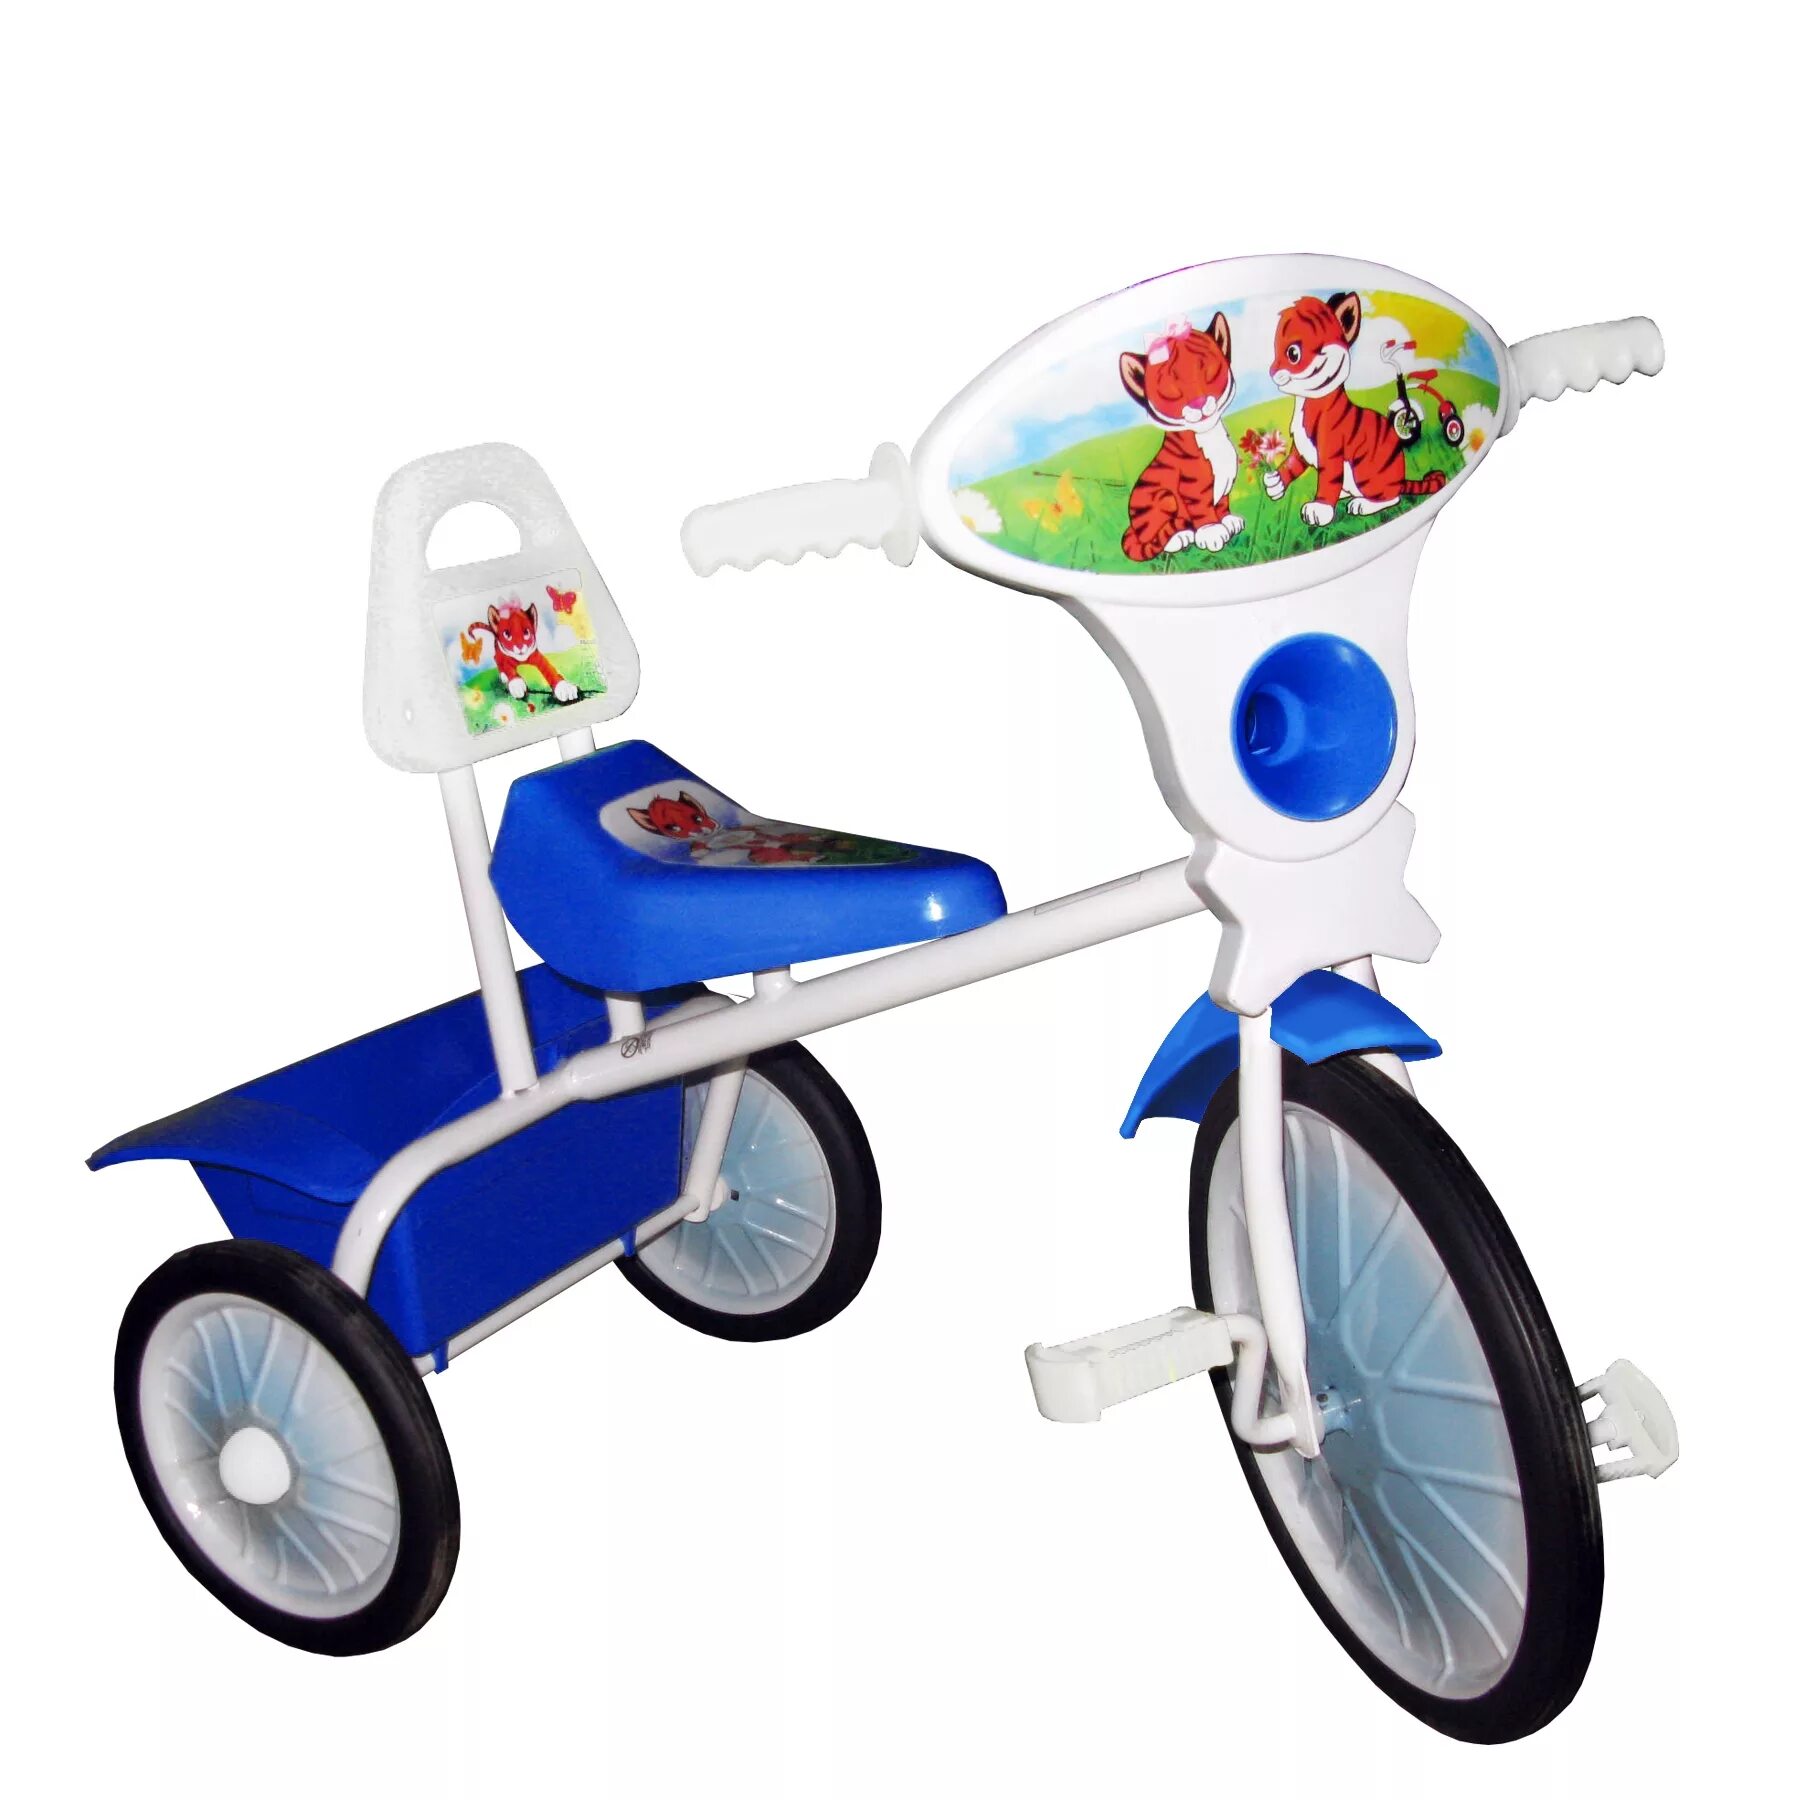 Велосипед для ребенка авито. Завод старт велосипед малыш. Трехколесный велосипед малыш 800507-4. Трехколесный велосипед малыш 800607. Трехколесный велосипед малыш 800707.